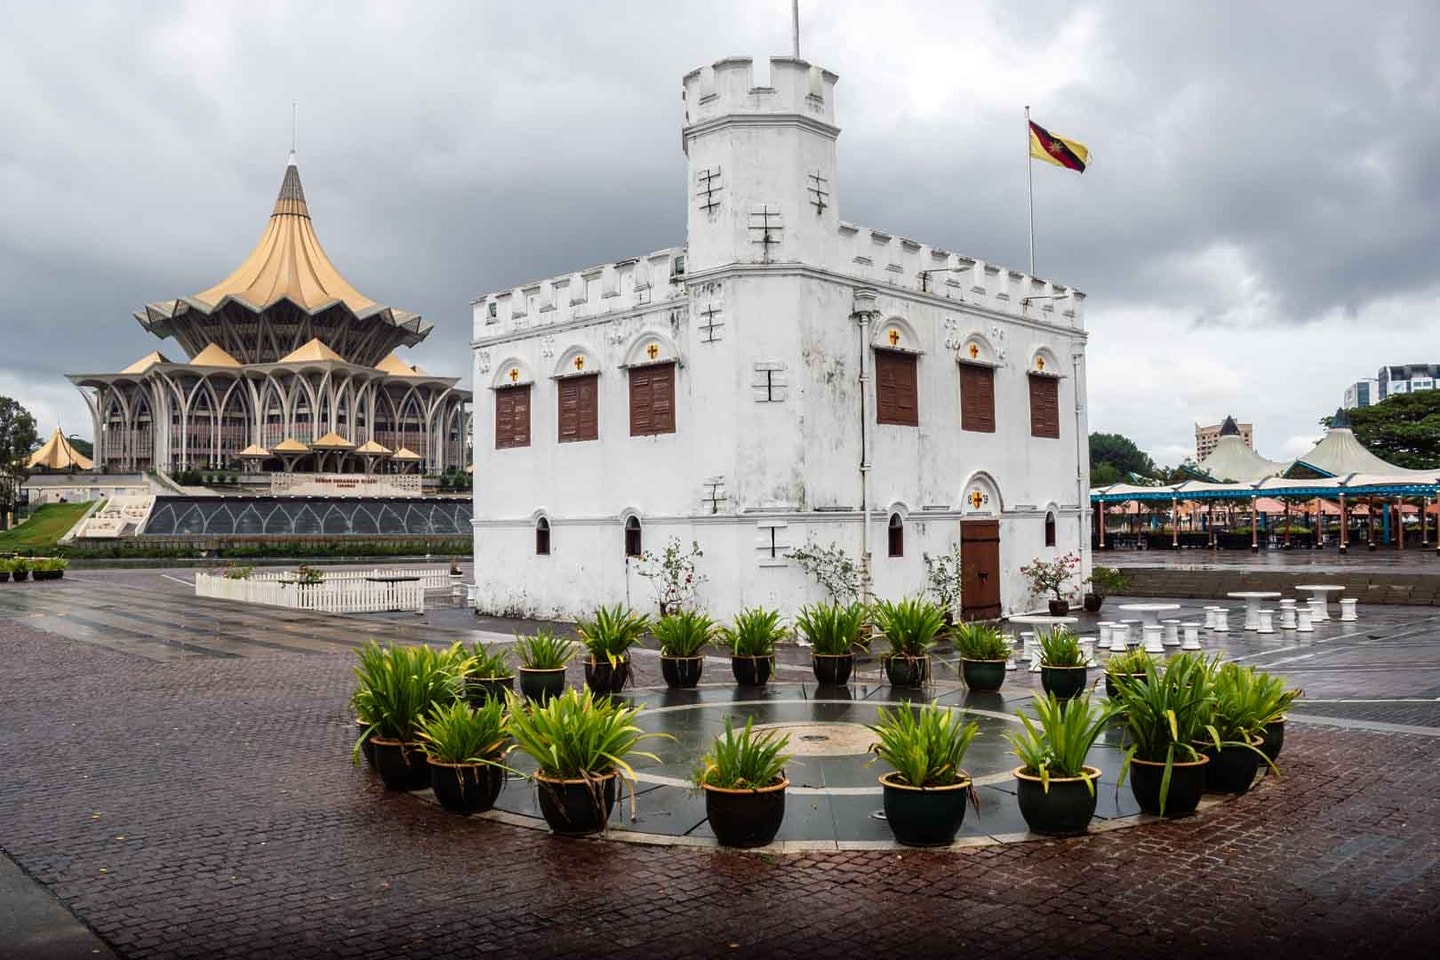 Kuching waterfront architecture, Borneo